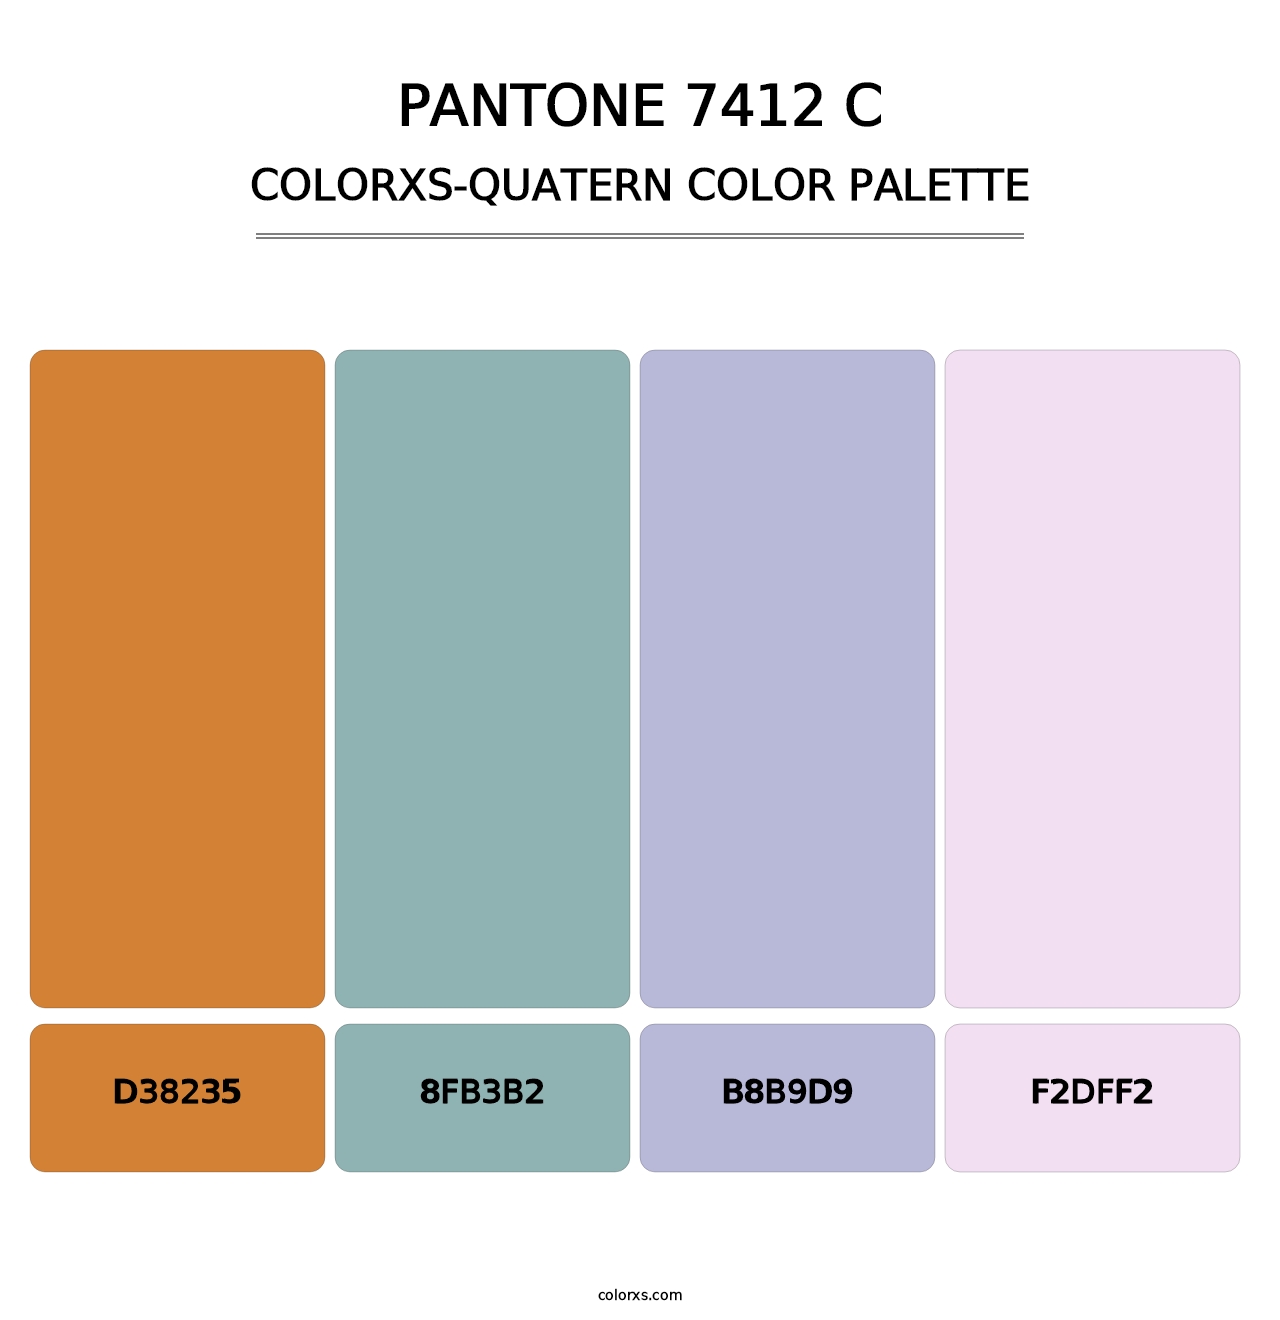 PANTONE 7412 C - Colorxs Quatern Palette